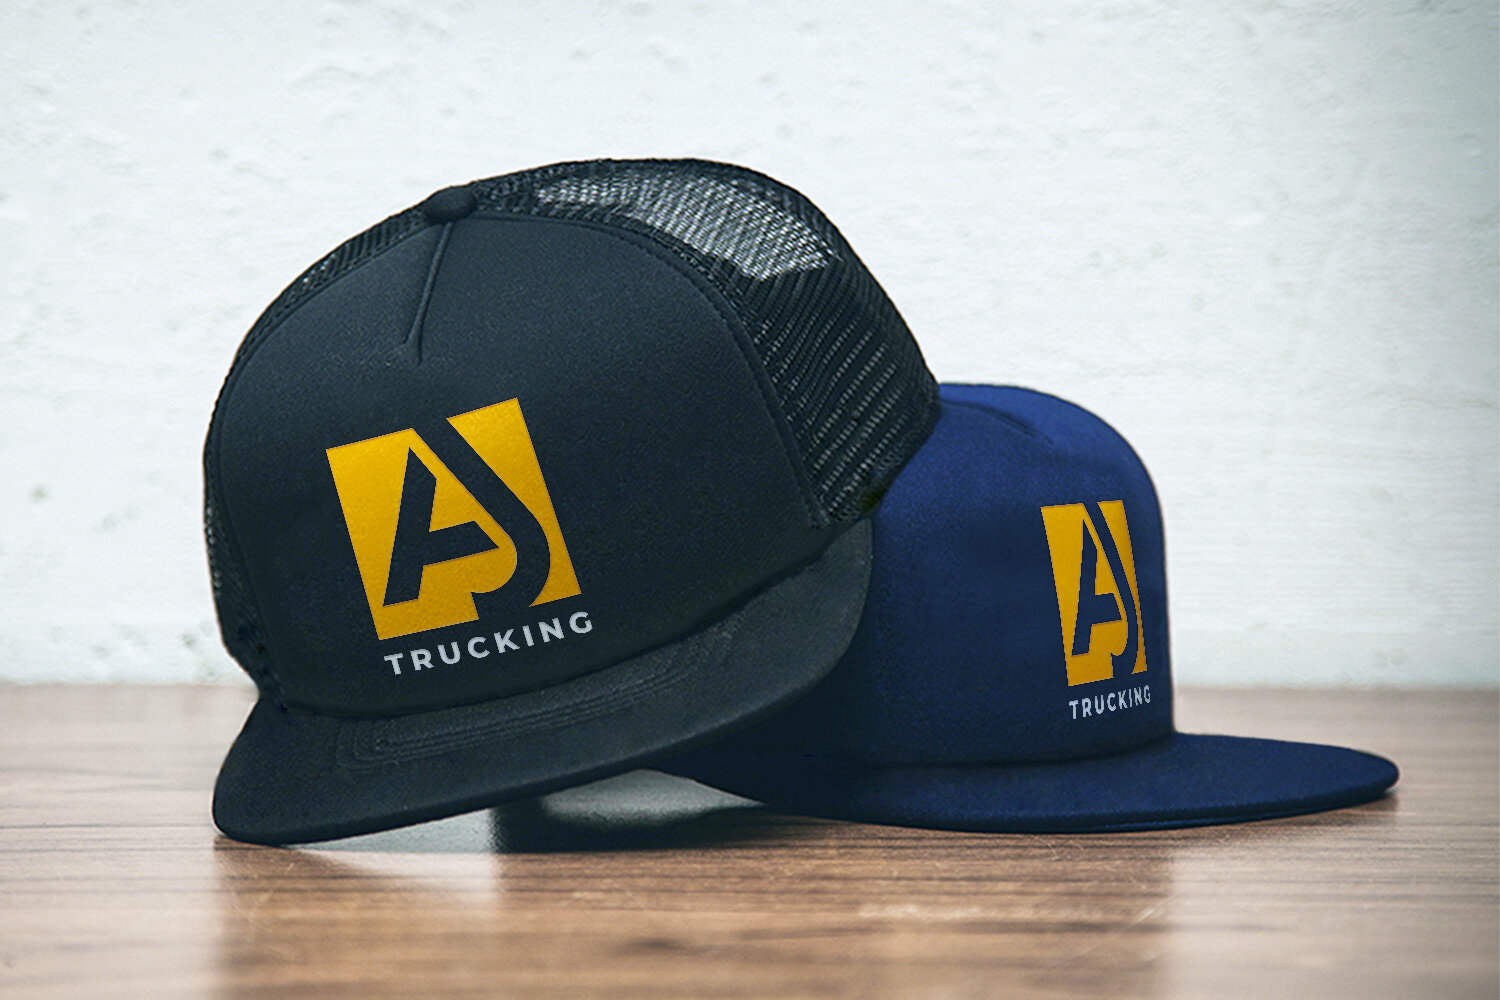 AJ Trucking Hats